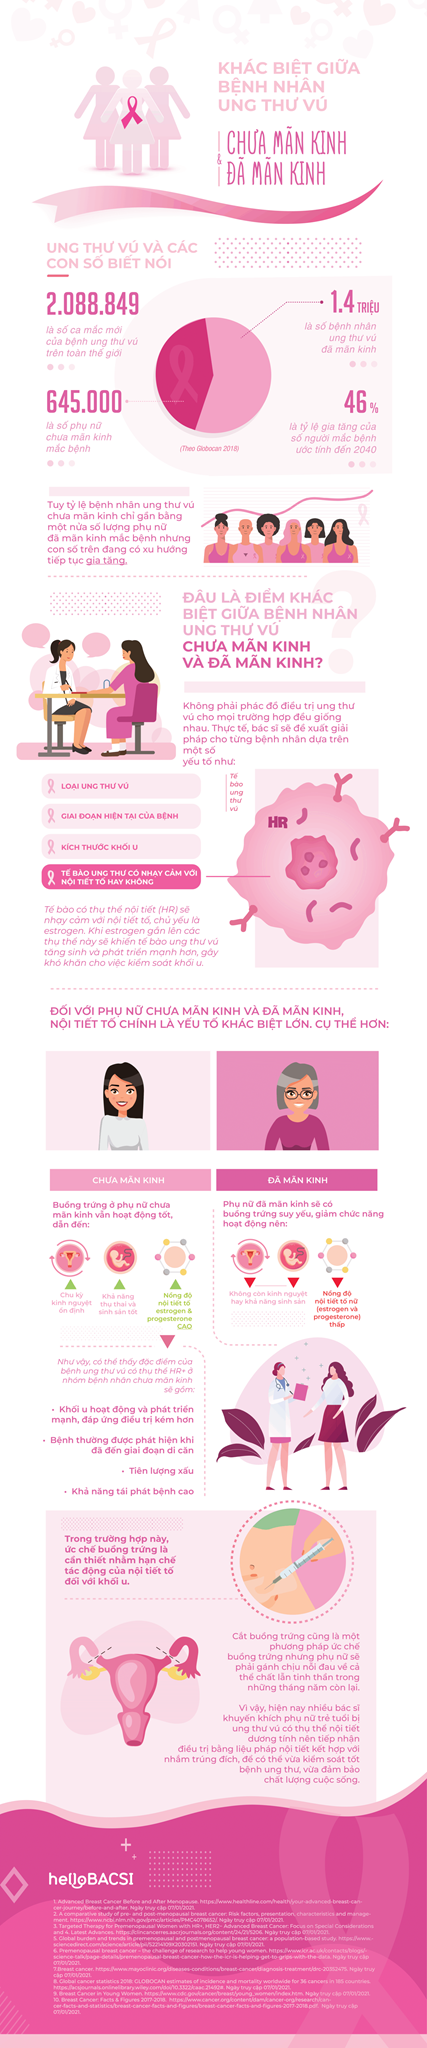 [Infographic] Khác biệt giữa bệnh nhân ung thư vú chưa mãn kinh và đã mãn kinh